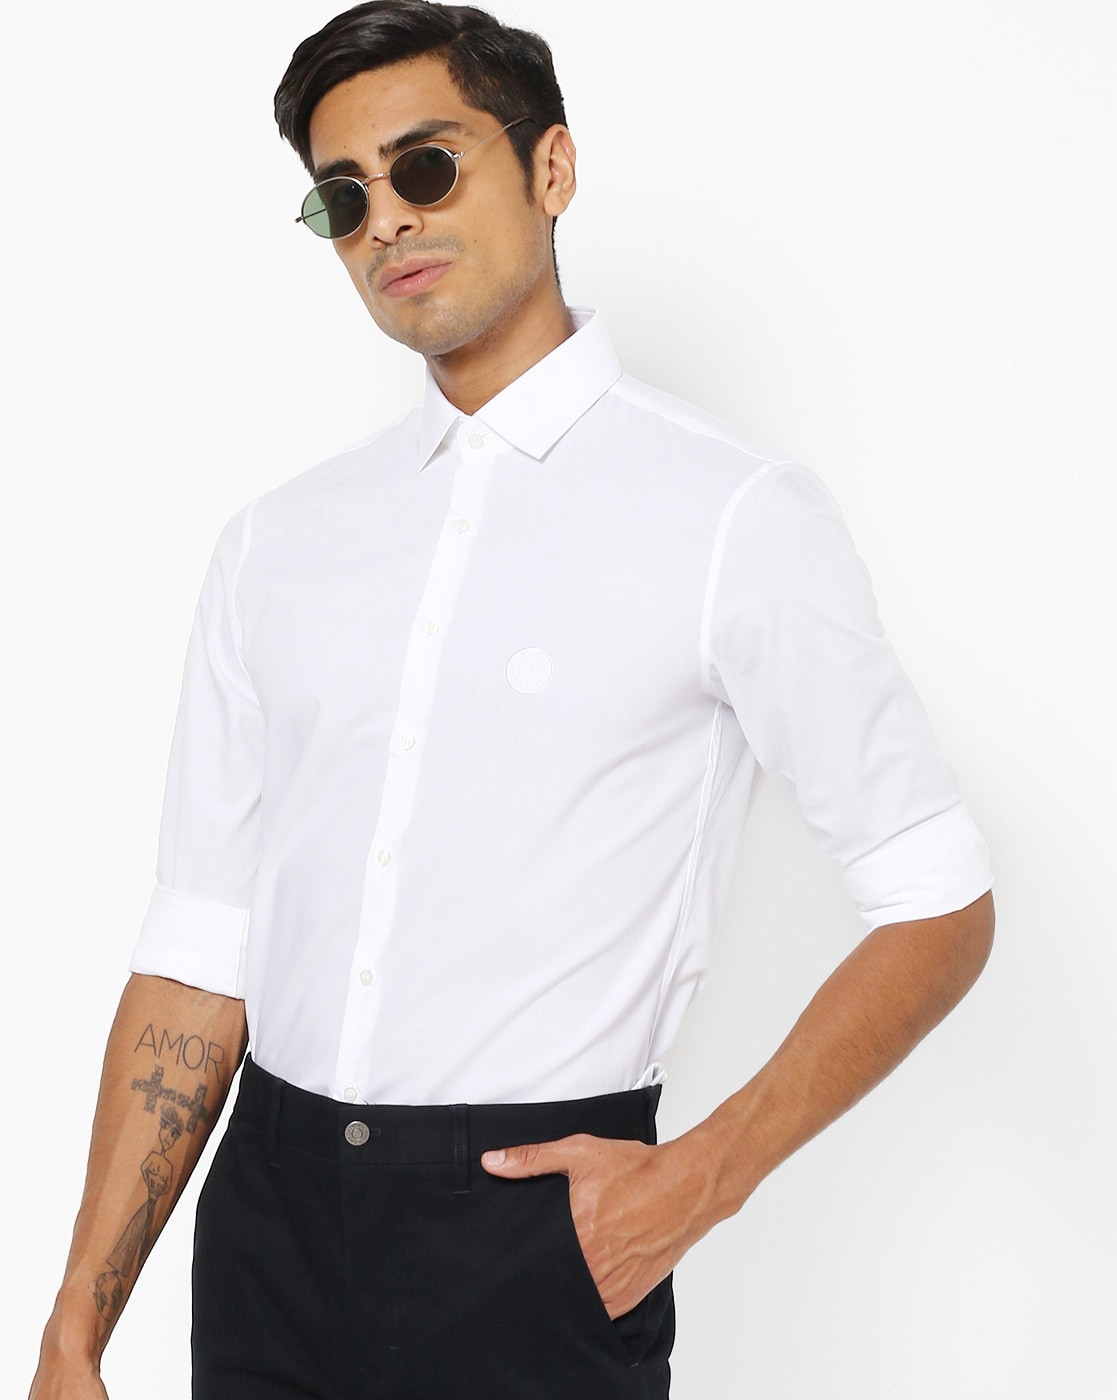 White Shirts Men Calvin Klein Online | Ajio.com